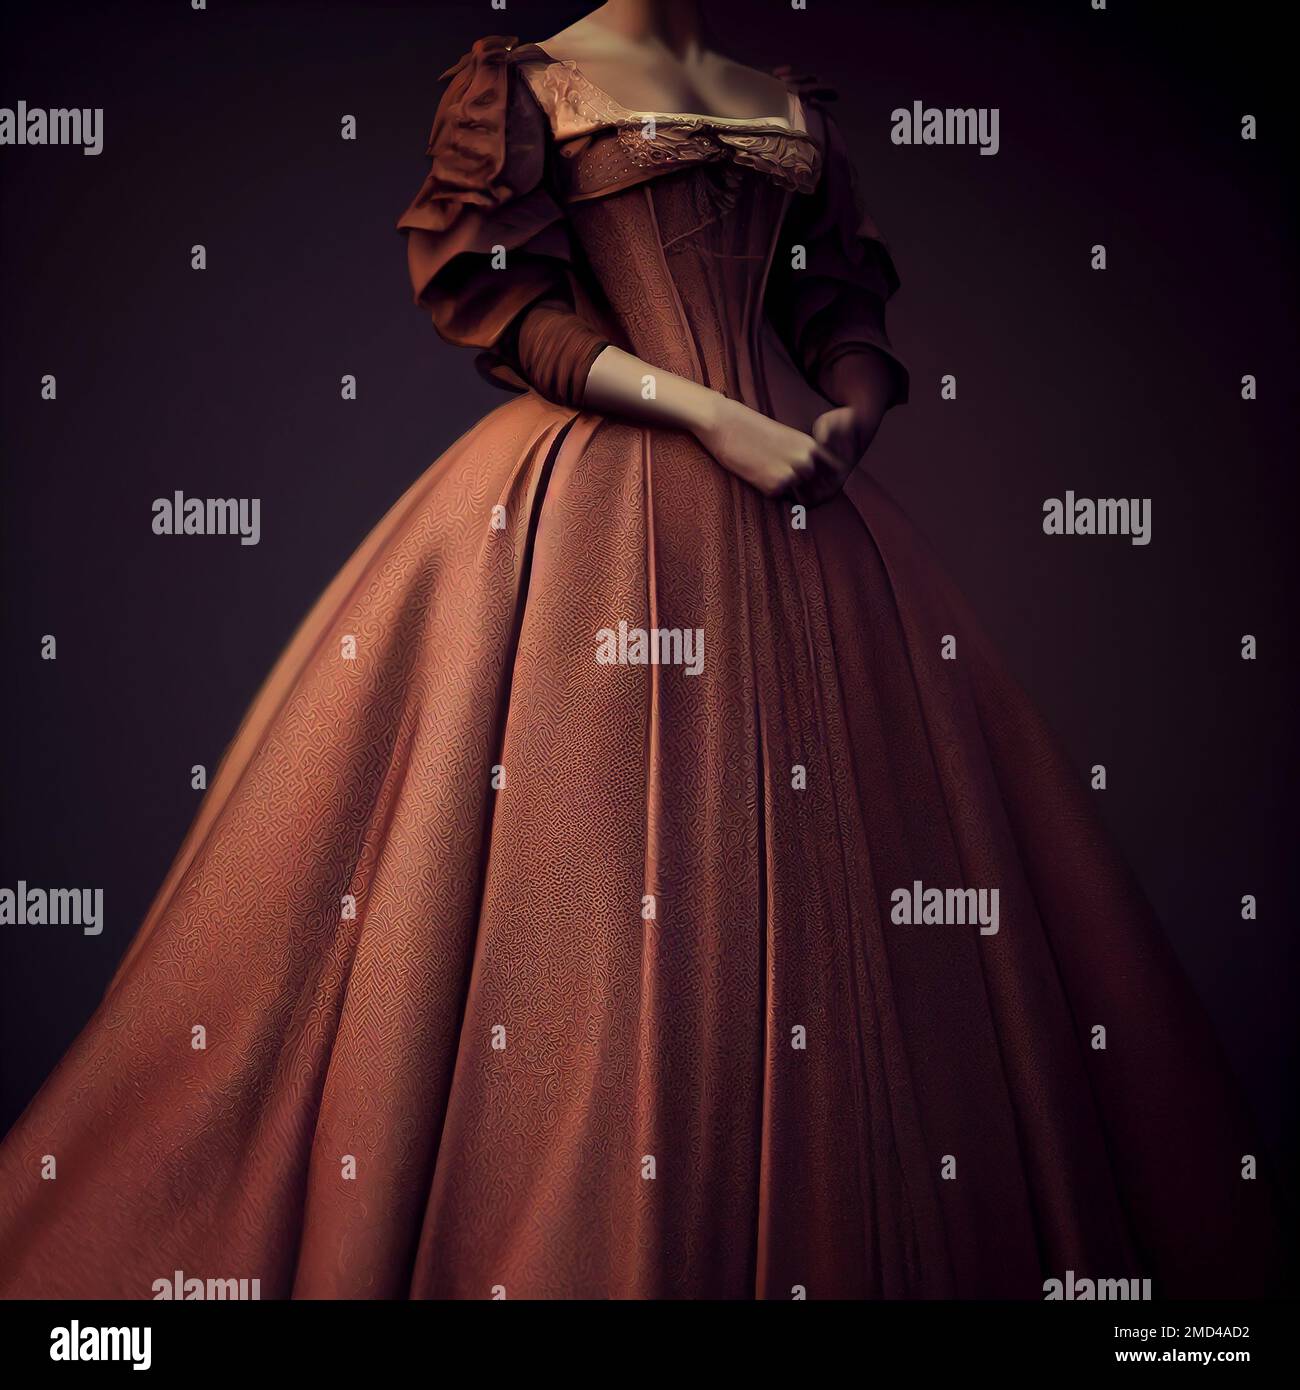 Beautiful victorian dress. Product shot Stock Photo